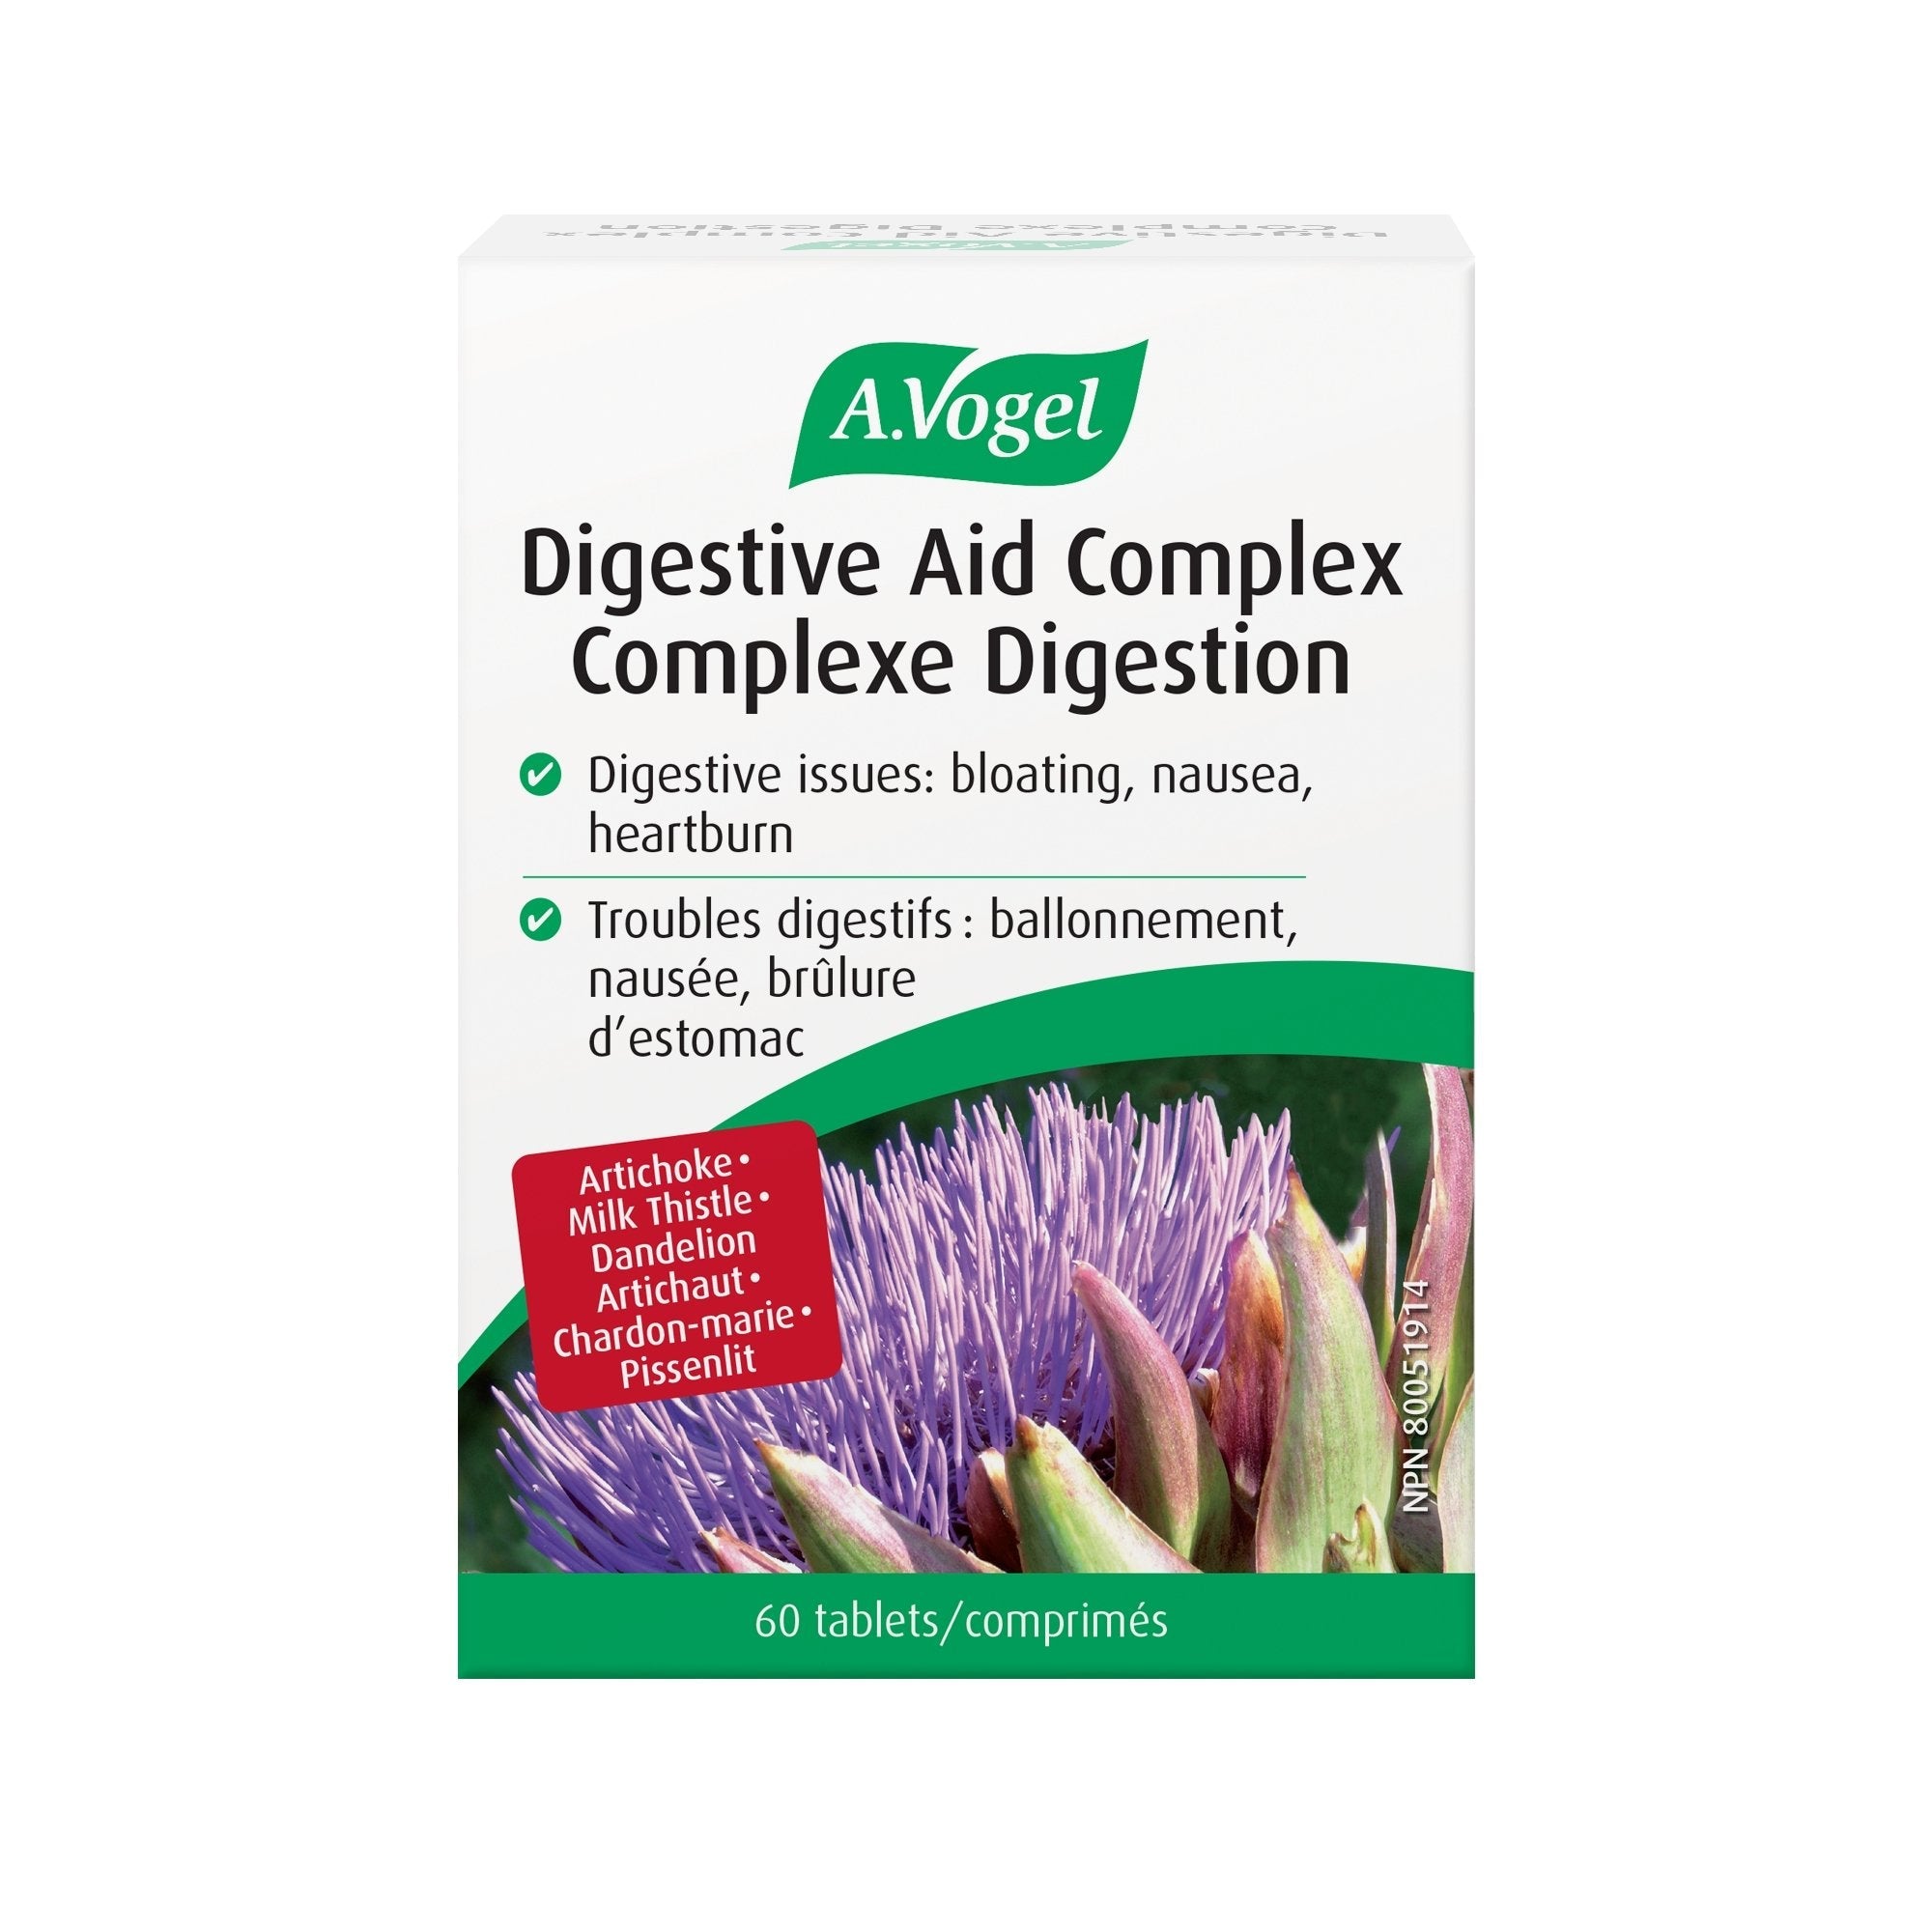 A. Vogel Digestive Aid Complex Boldocynara 60 Tablets